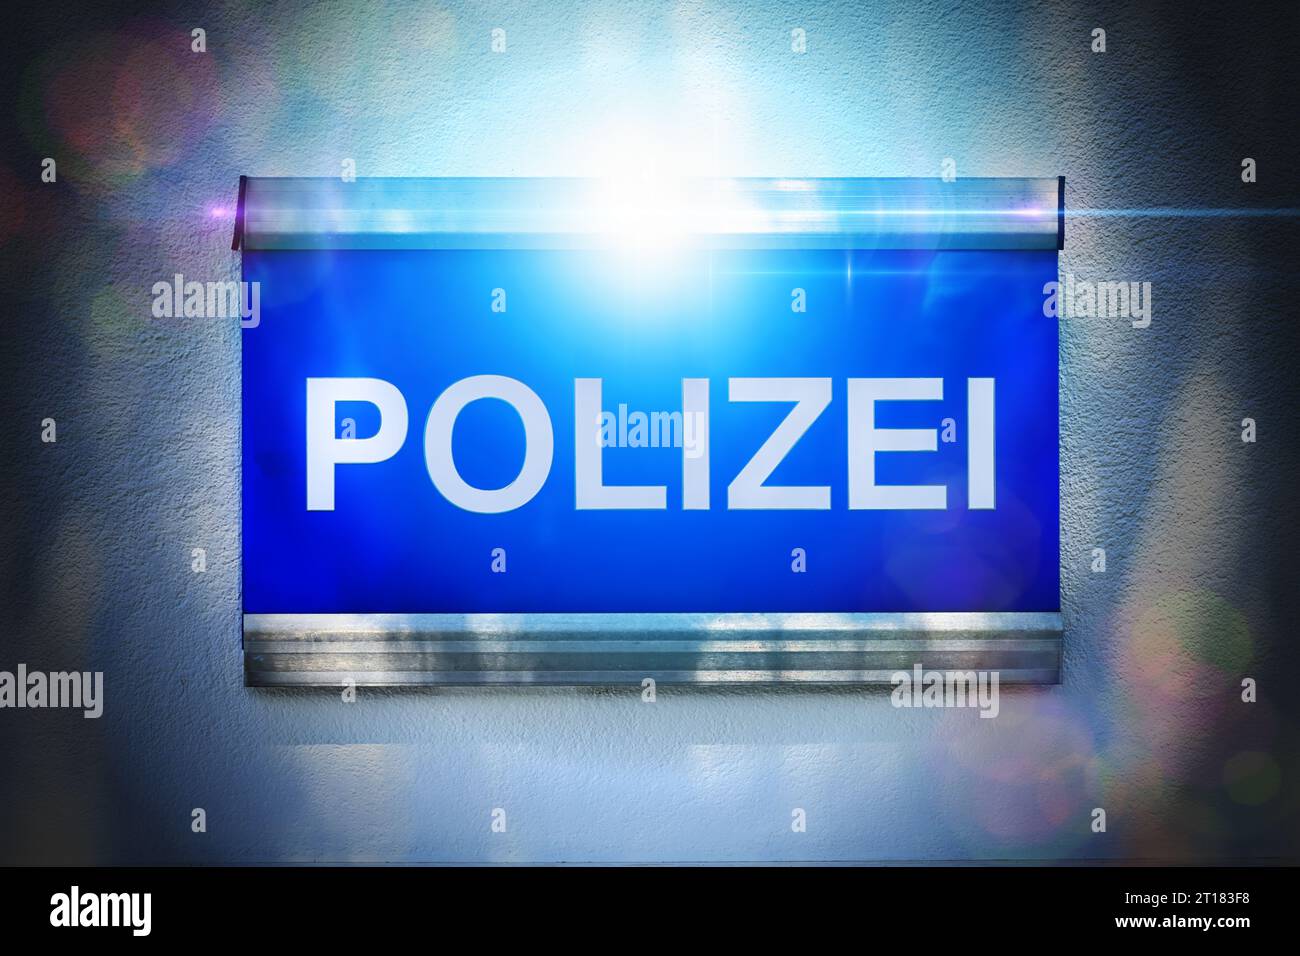 FOTOMONTAGE, Polizei-Schild mit Blaulicht Foto Stock